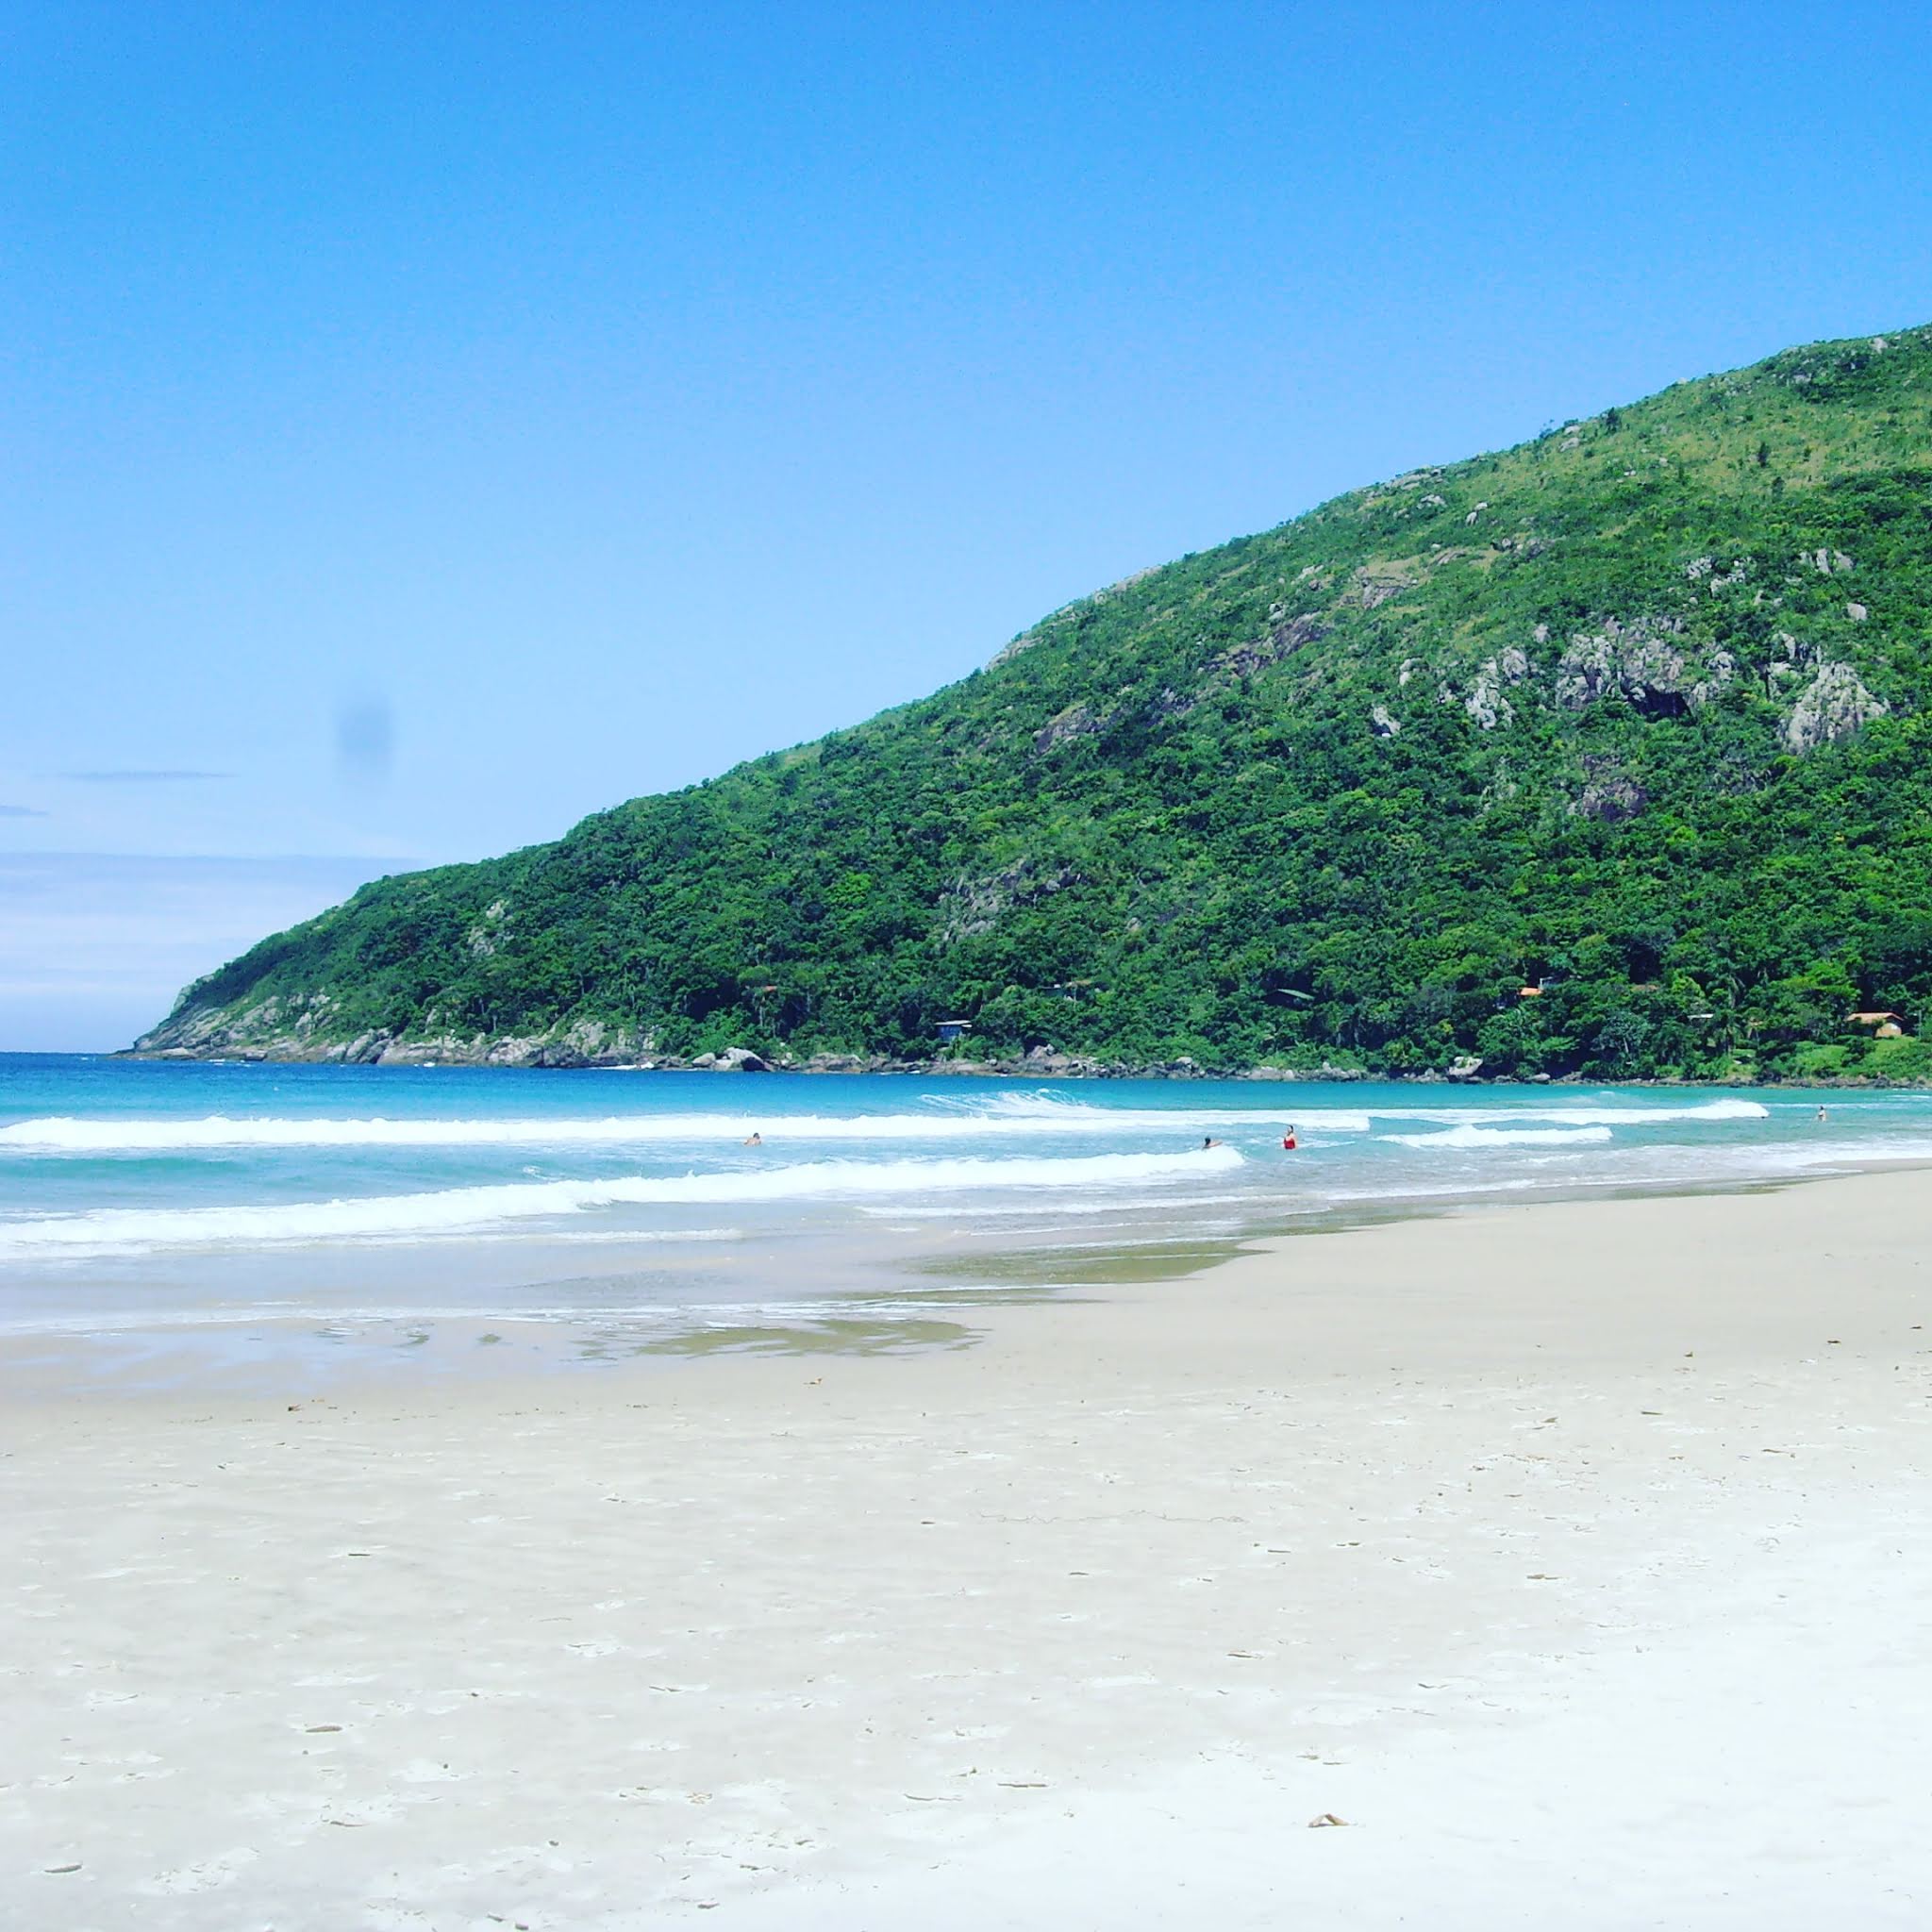 florianopolis beaches in Brazil are far prettier than praia do casino